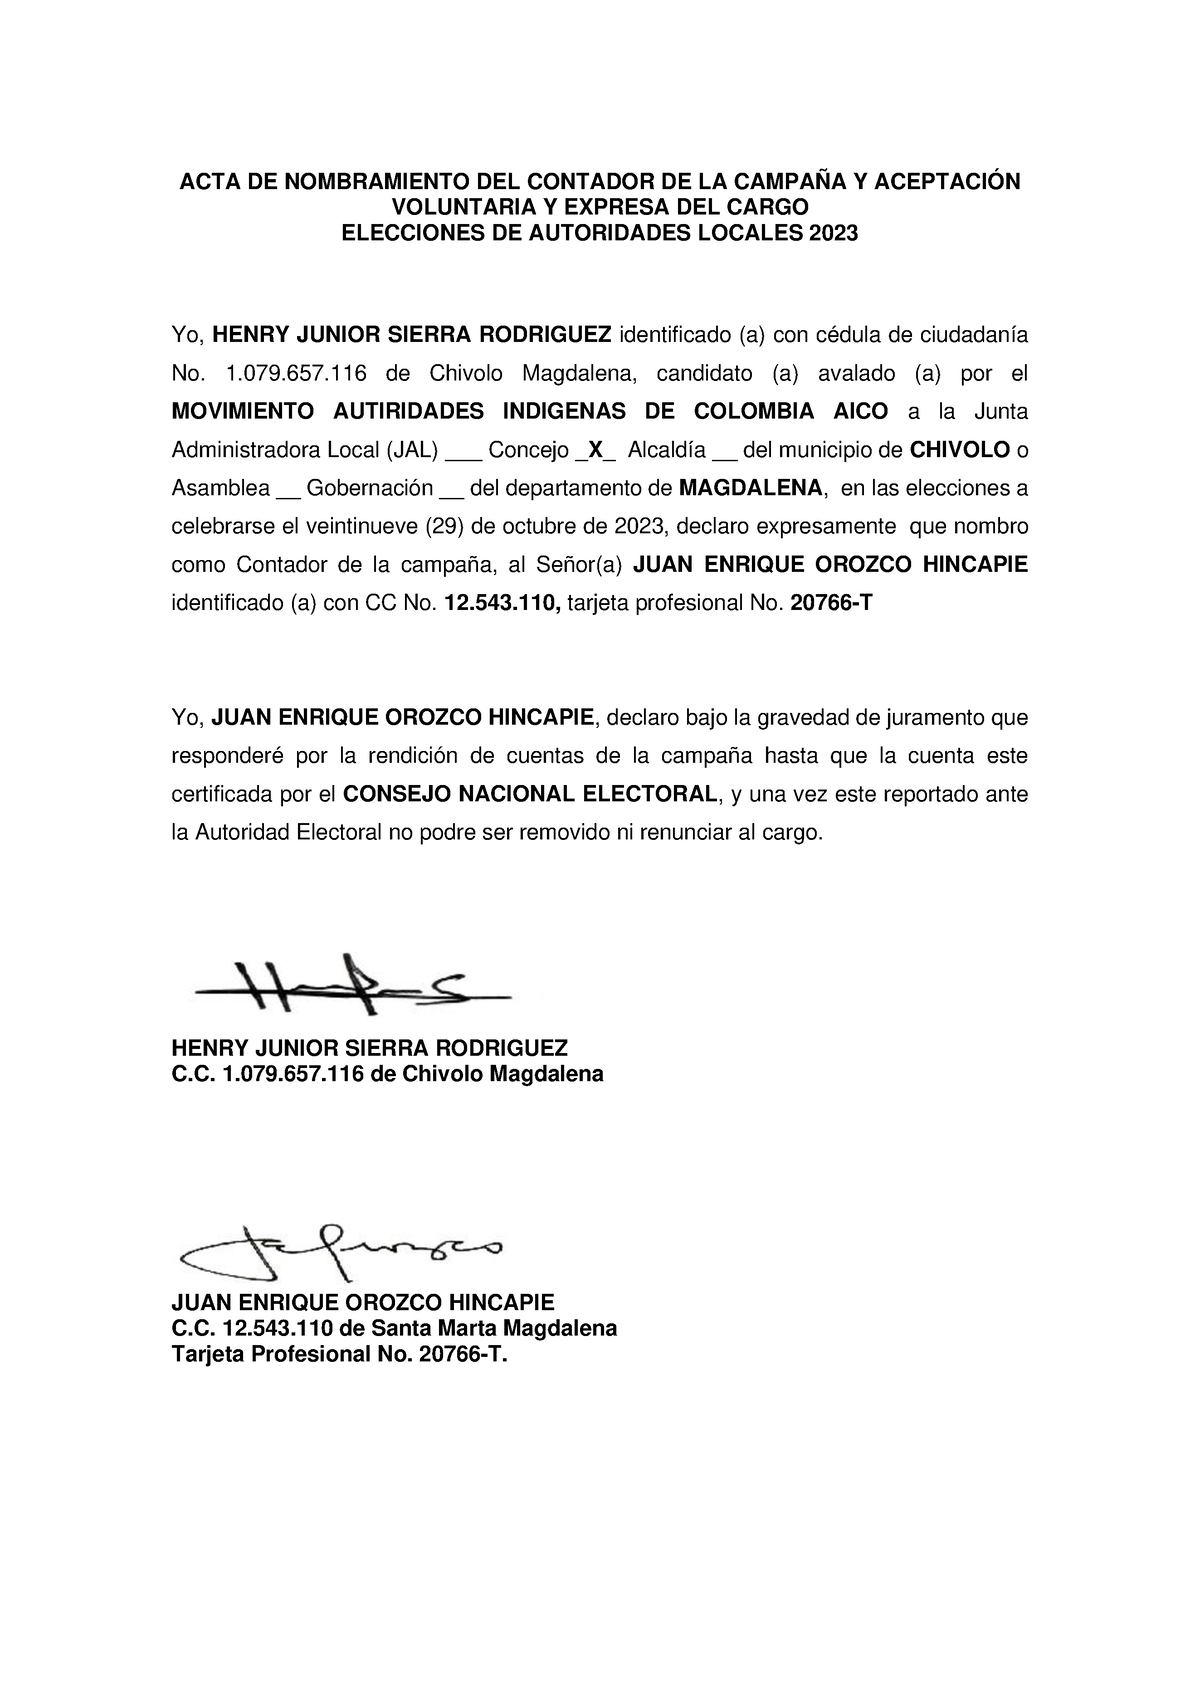 Acta De Asignacion Y Aceptacion De Cargo De Contador Henry Sierra